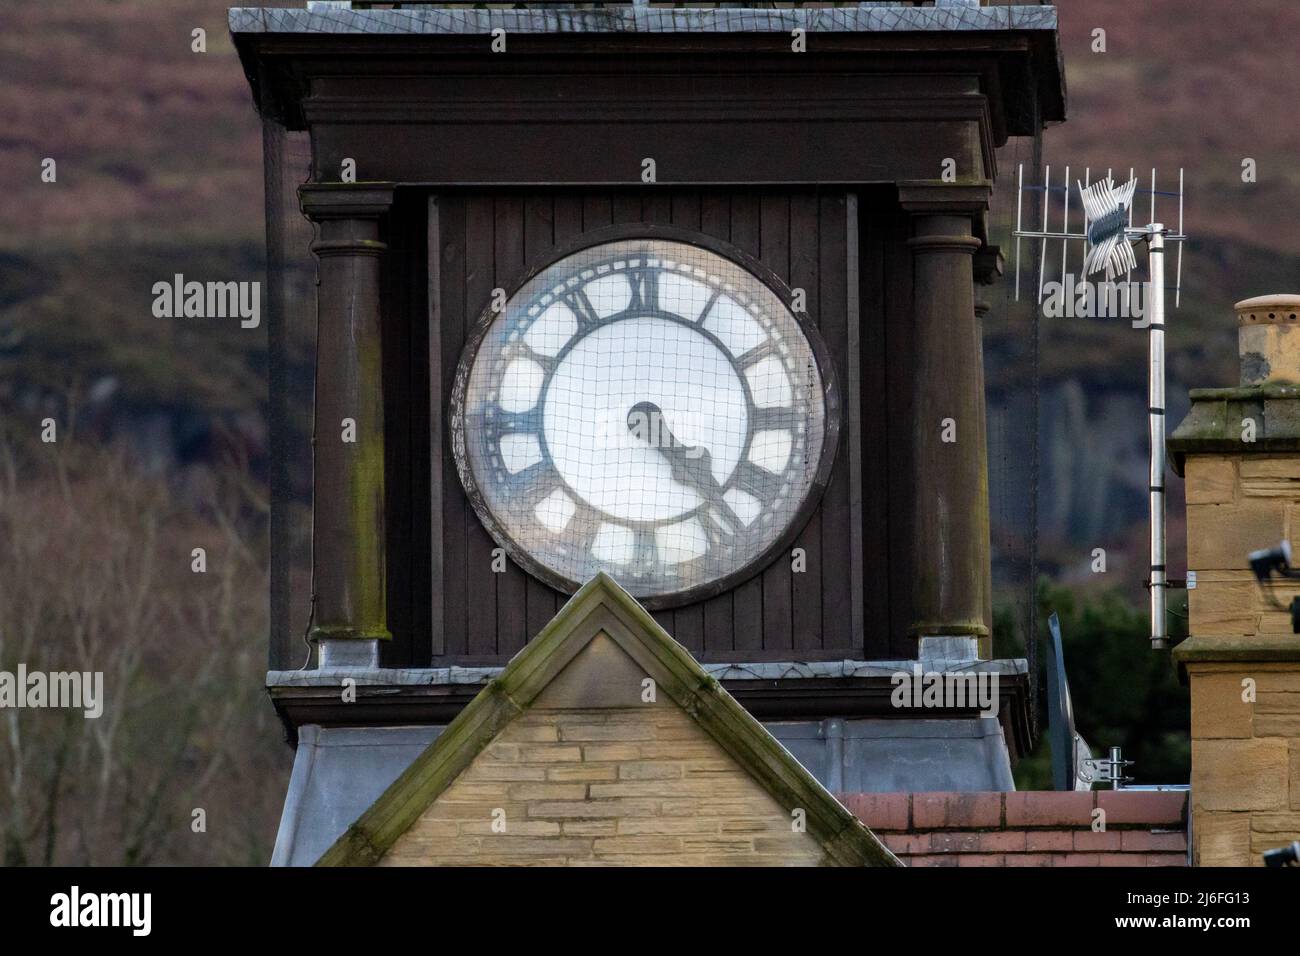 Weißes Zifferblatt auf einem Uhrturm mit römischen Ziffern und dem Minutenzeiger, der den Stundenzeiger überlappt, West Yorkshire, England, Großbritannien Stockfoto